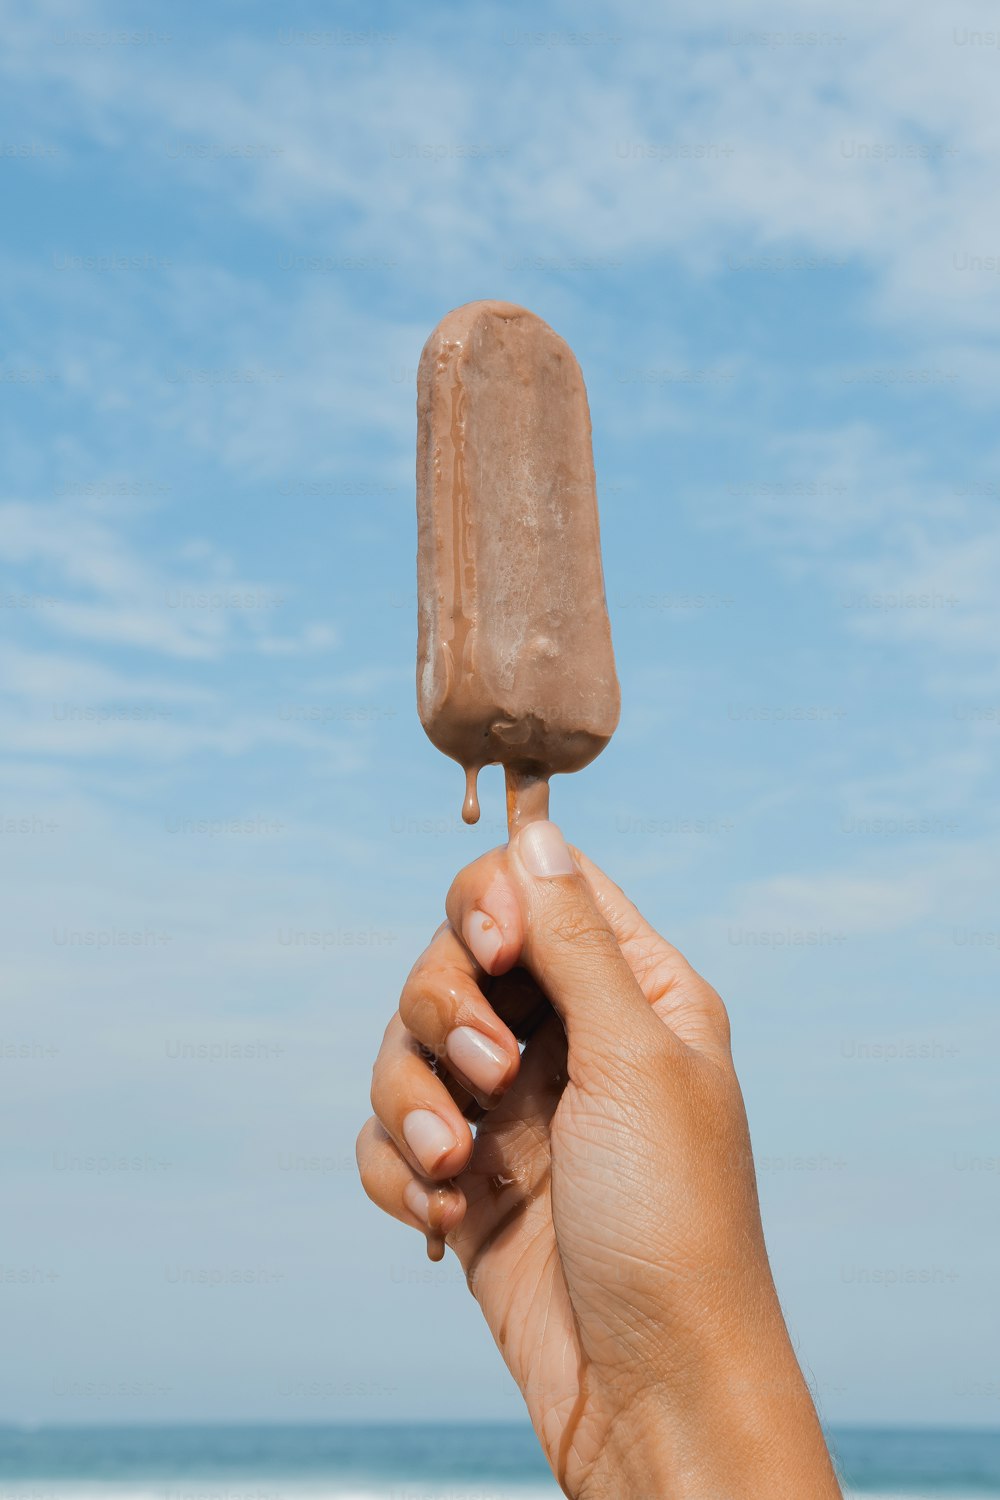 막대기에 초콜릿 아이스크림을 들고 있는 손